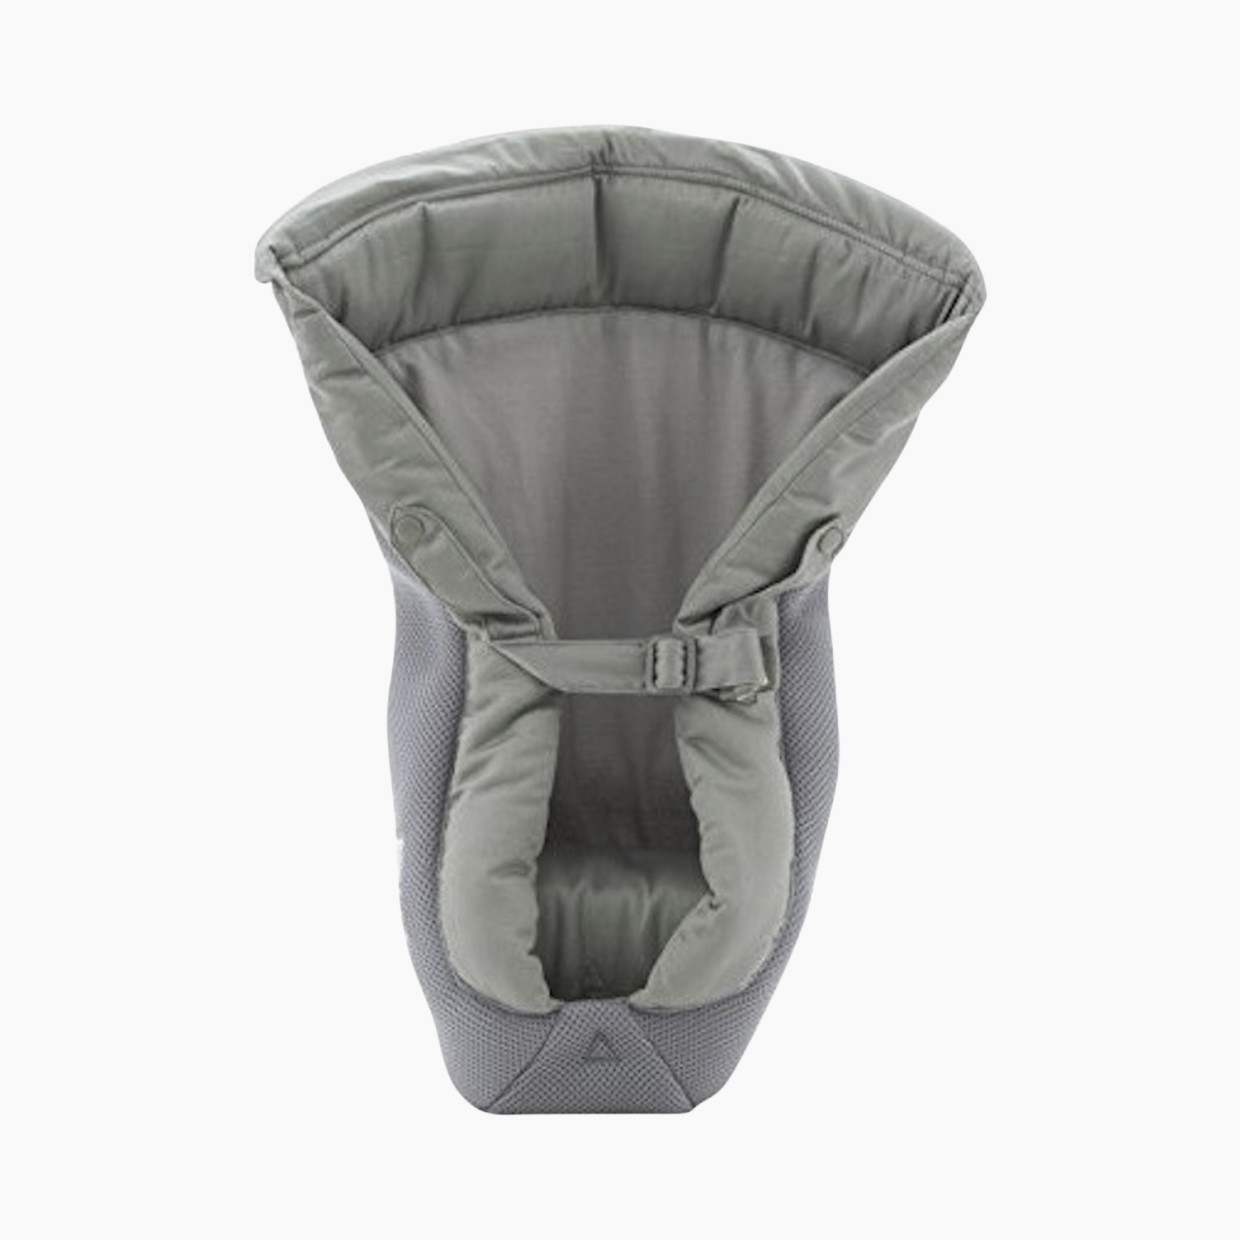 Ergobaby Easy Snug Infant Insert: Cool Air Mesh - Gray.